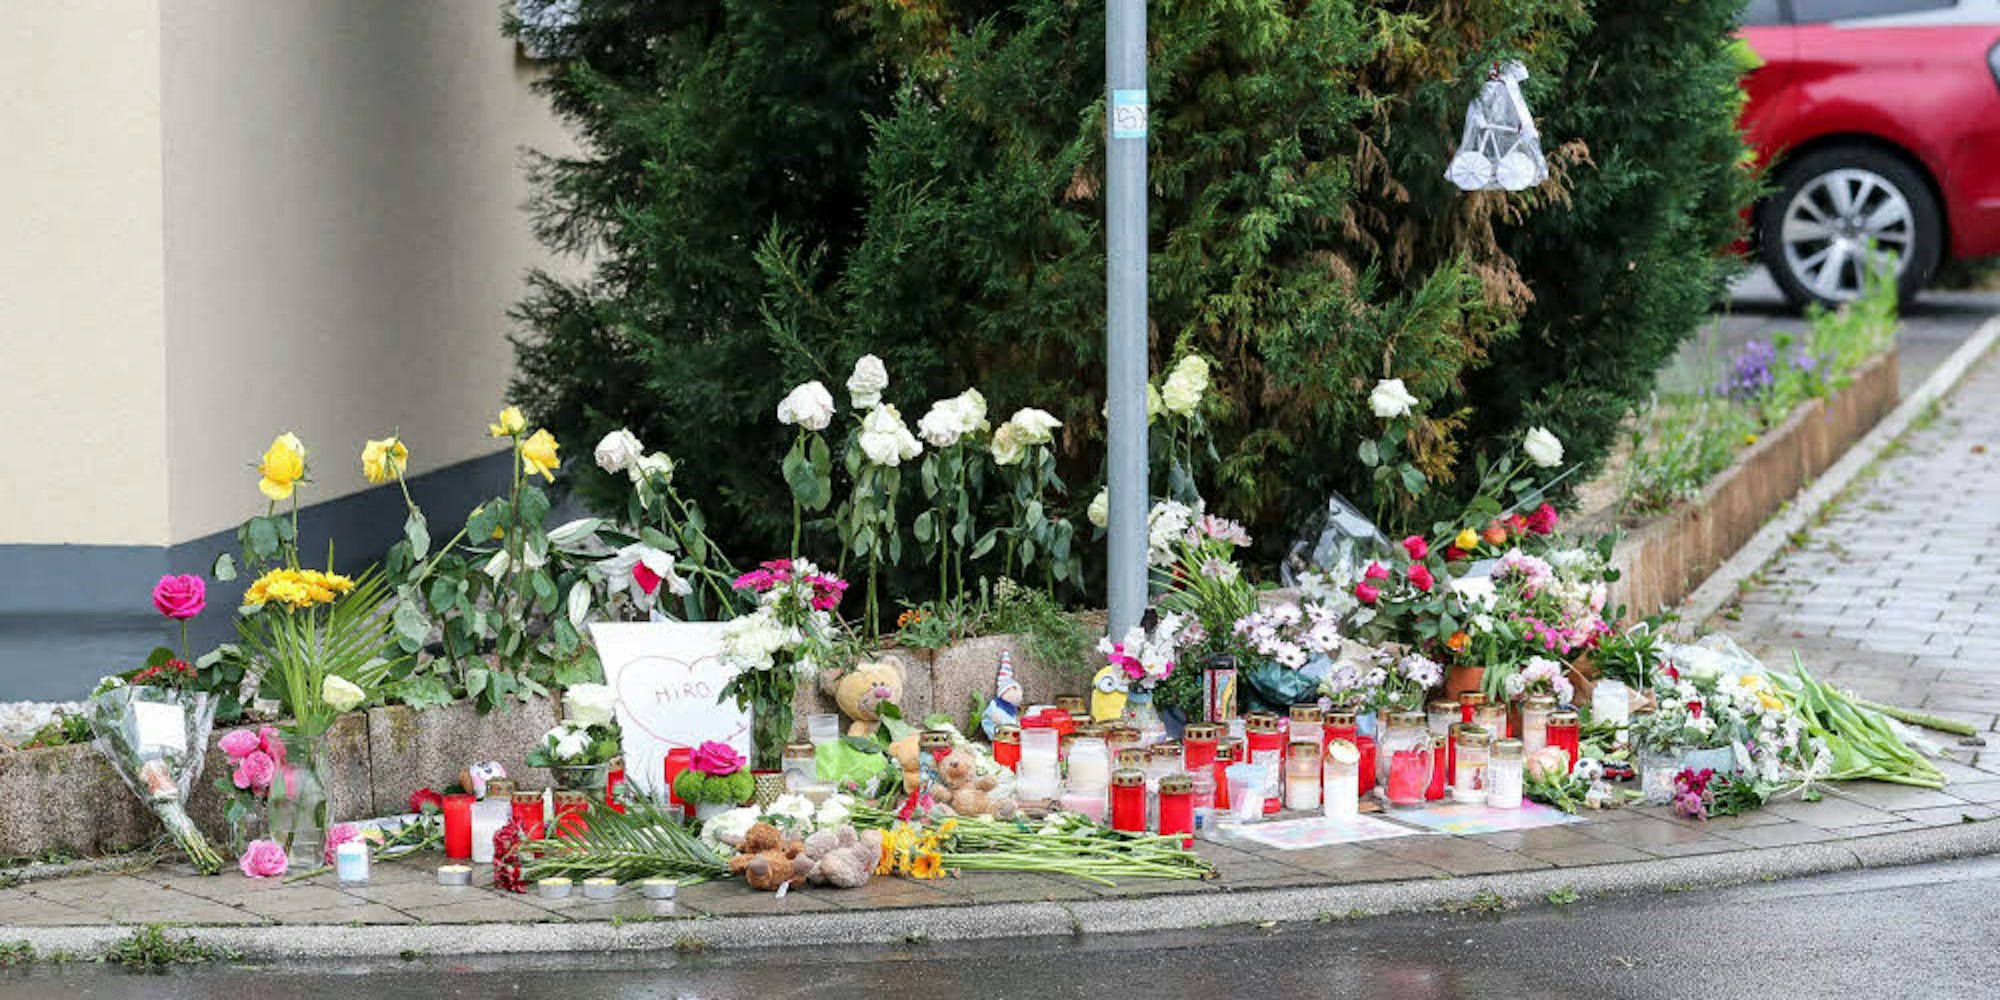 Kerzen, Blumen und Stofftiere wurden direkt nach dem schrecklichen Unfall an der Unglücksstelle abgelegt. Die geplante Mahnwache wurde aus Rücksicht auf die betroffene Familie abgesagt.